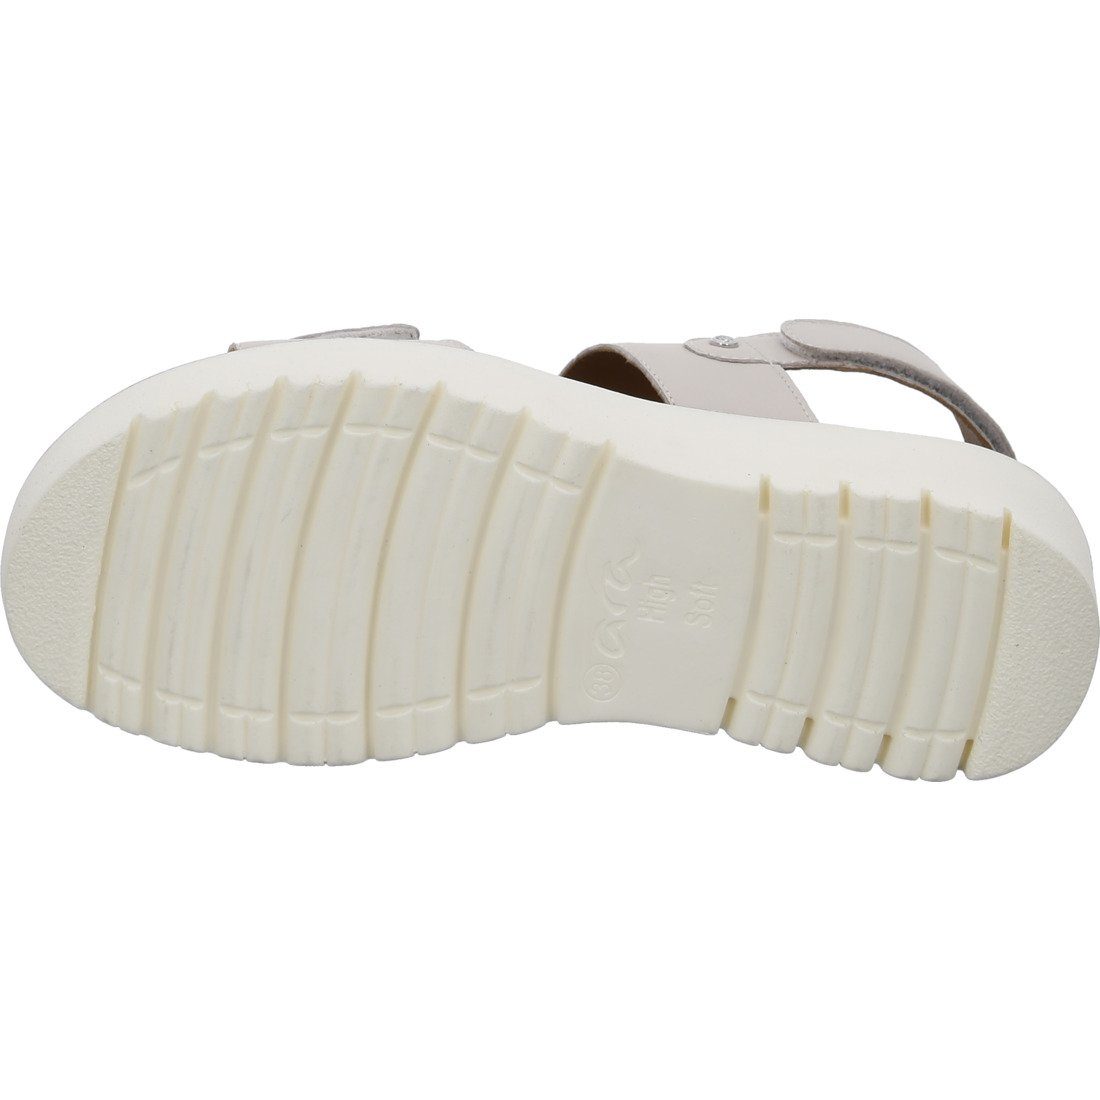 Ara Ara - 048122 Bilbao Schuhe, Glattleder Sandalette beige Sandalette